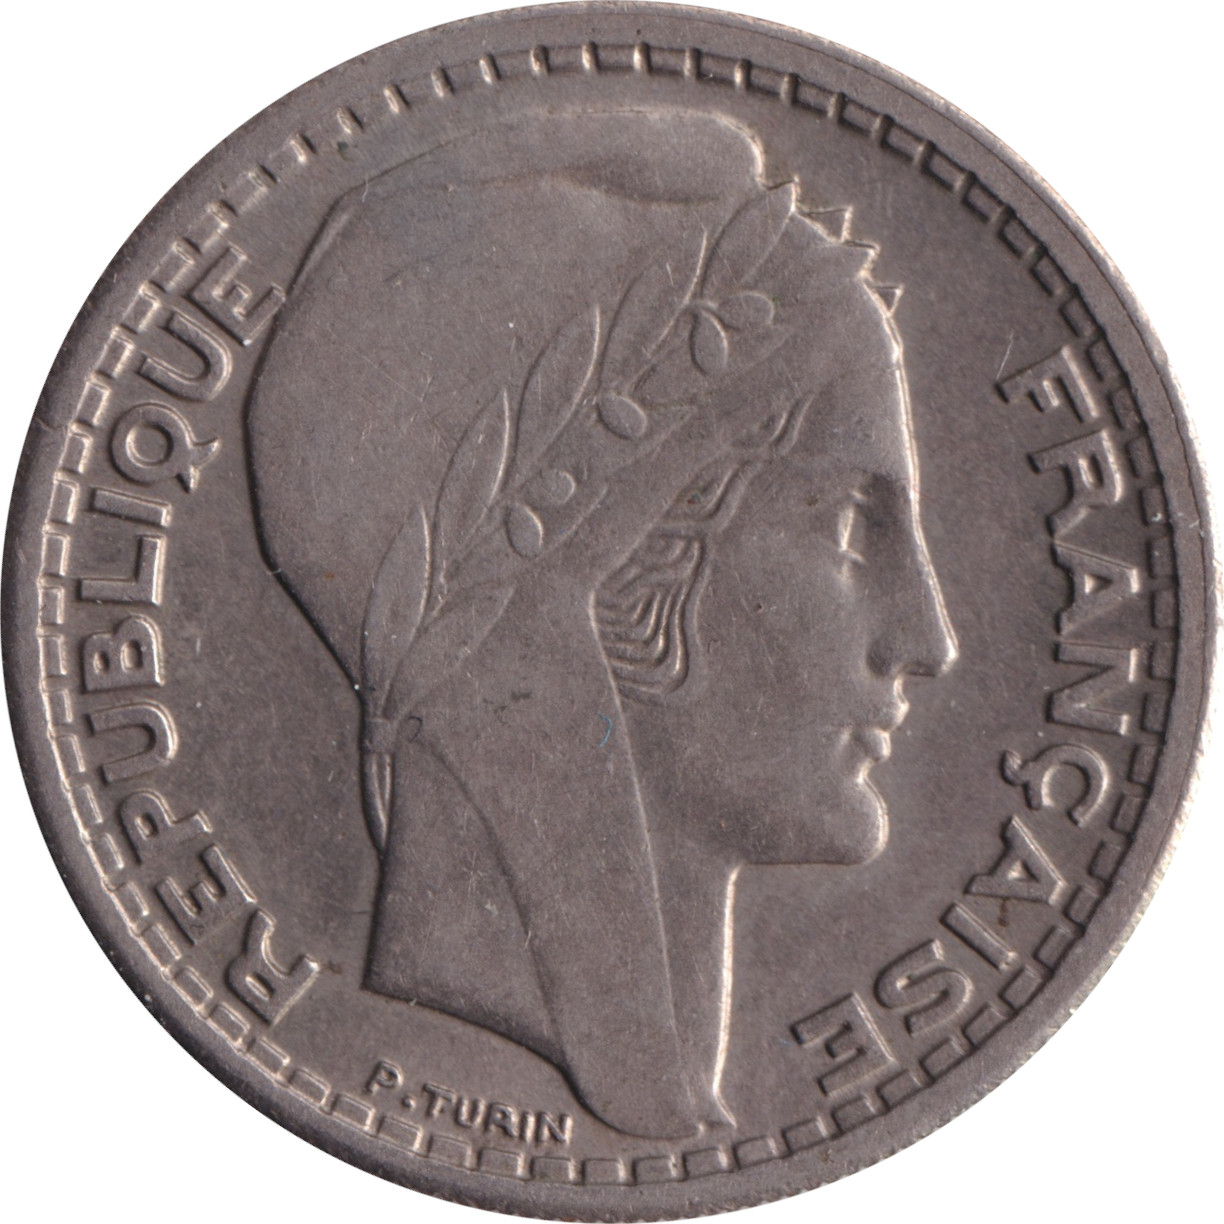 10 francs - Turin - Type léger